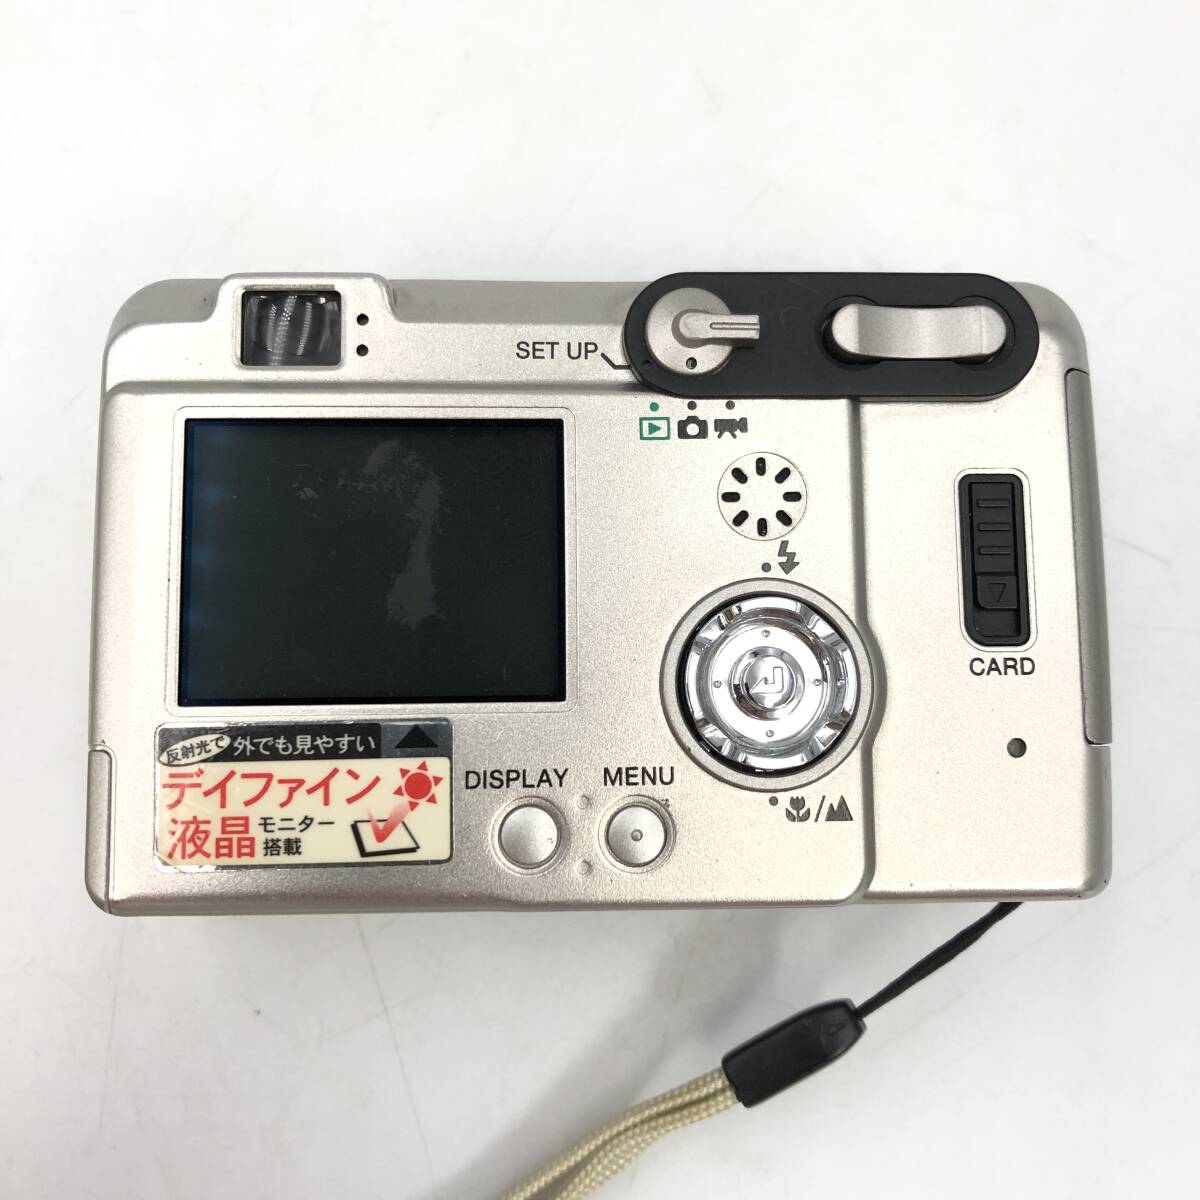 【KYOCERA】Finecam S3L 京セラ シルバー コンパクトデジタルカメラ_画像2